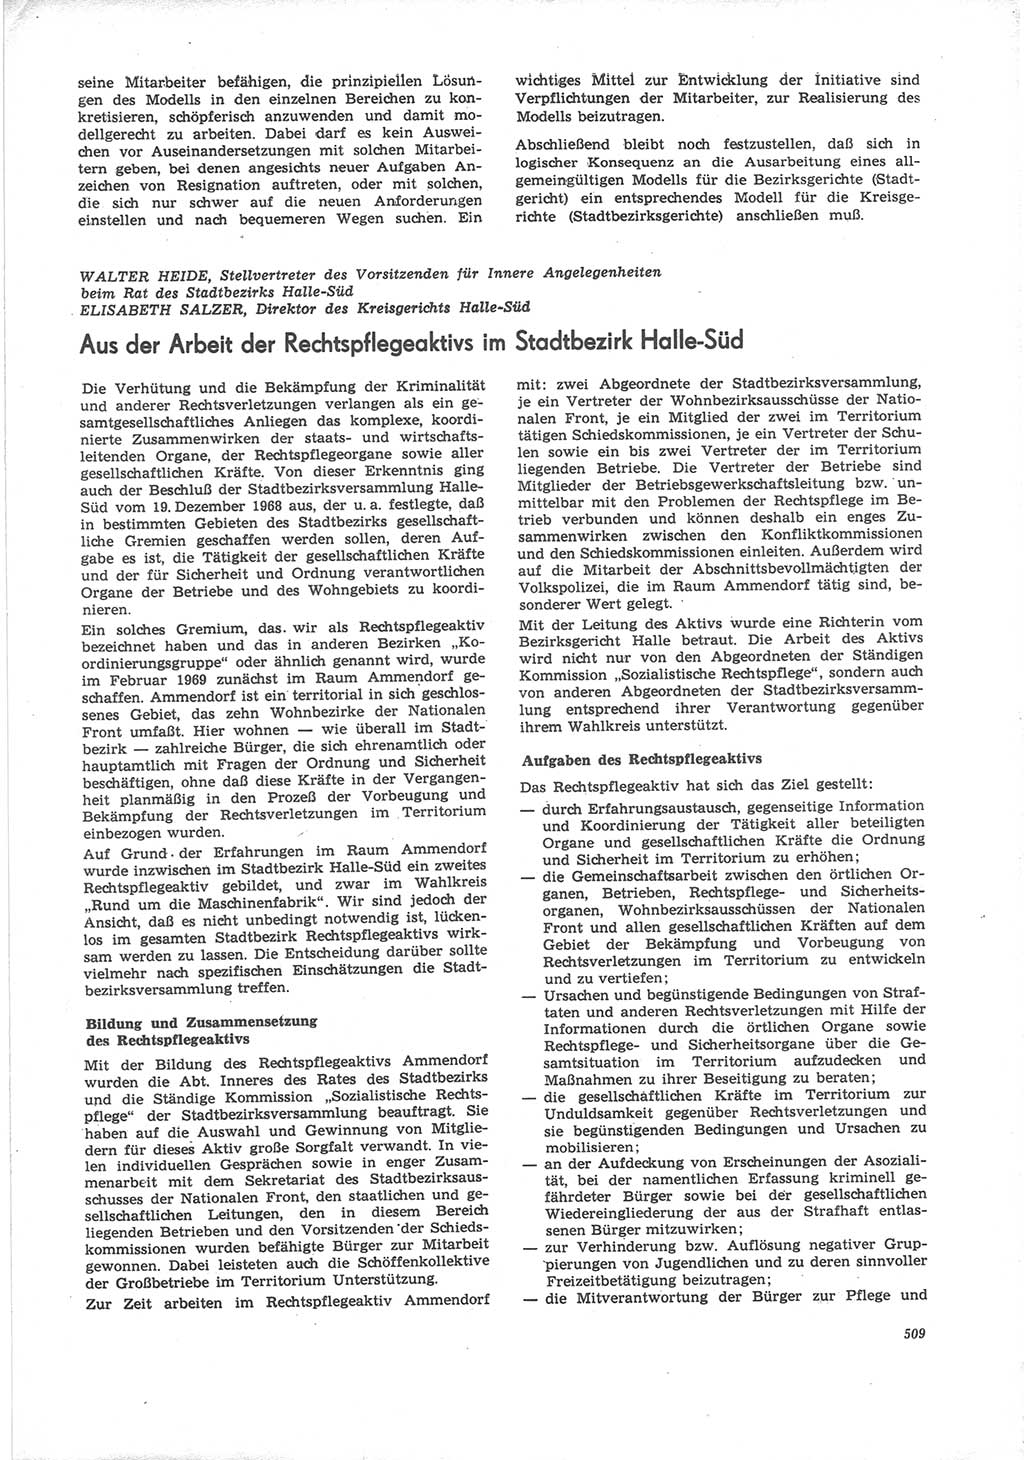 Neue Justiz (NJ), Zeitschrift für Recht und Rechtswissenschaft [Deutsche Demokratische Republik (DDR)], 24. Jahrgang 1970, Seite 509 (NJ DDR 1970, S. 509)